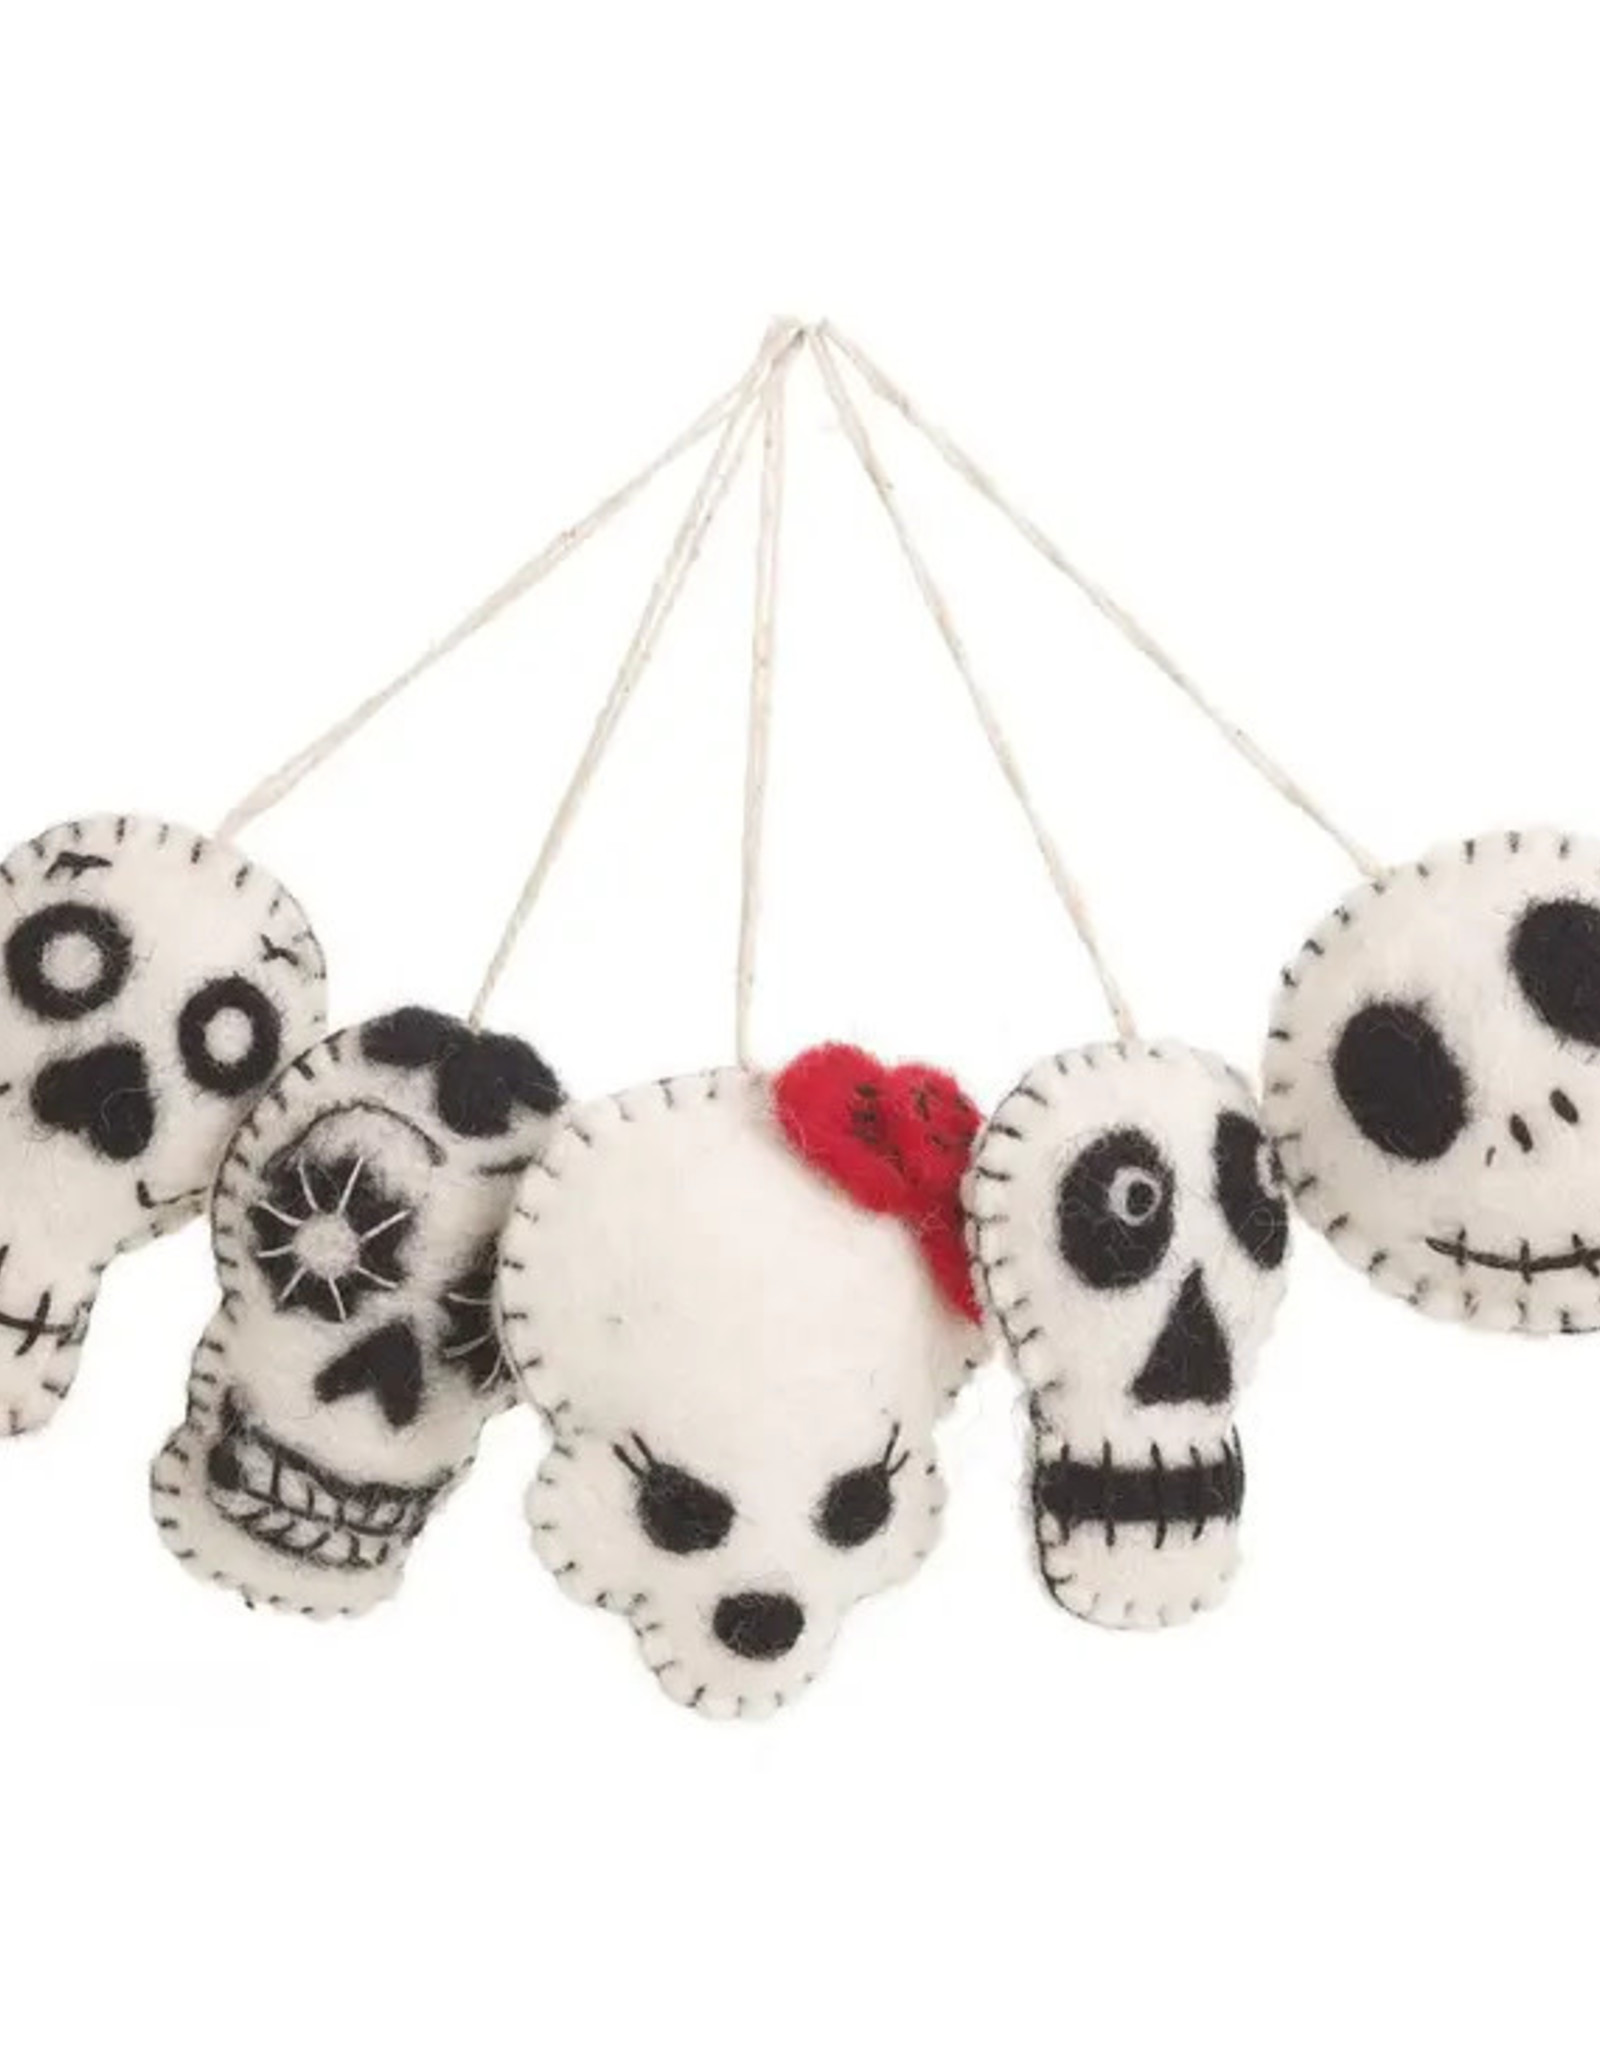 Felt So Good Skull Black & White Assorted Ornaments